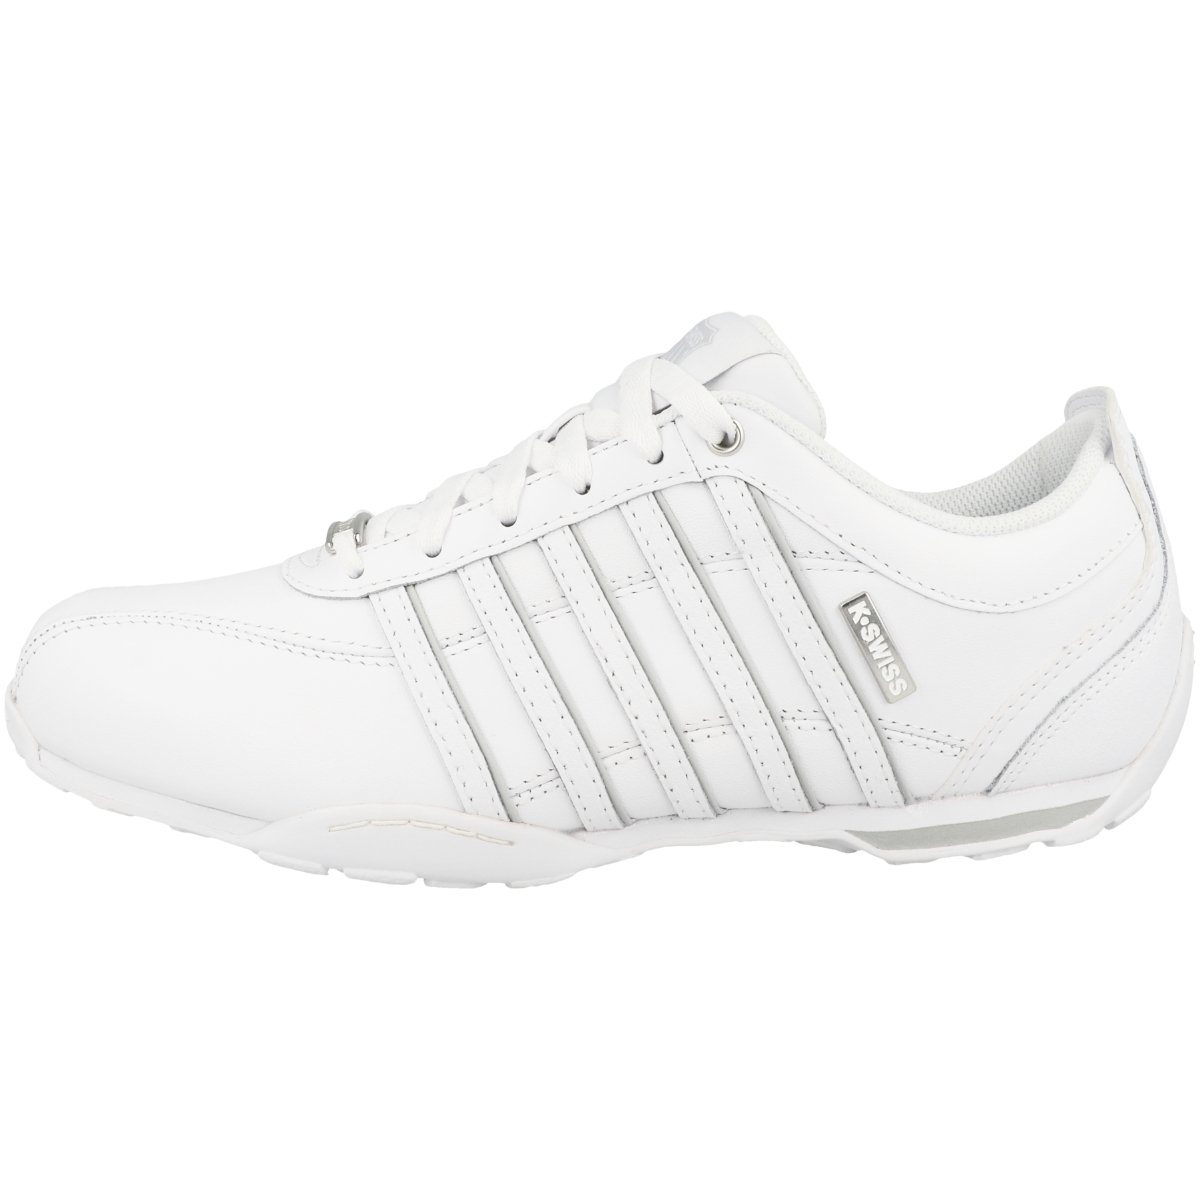 Arvee (11403022) WHITE/WHITE/GRAY Sneaker K-Swiss Herren 1.5 VIOLET/SPLIT-